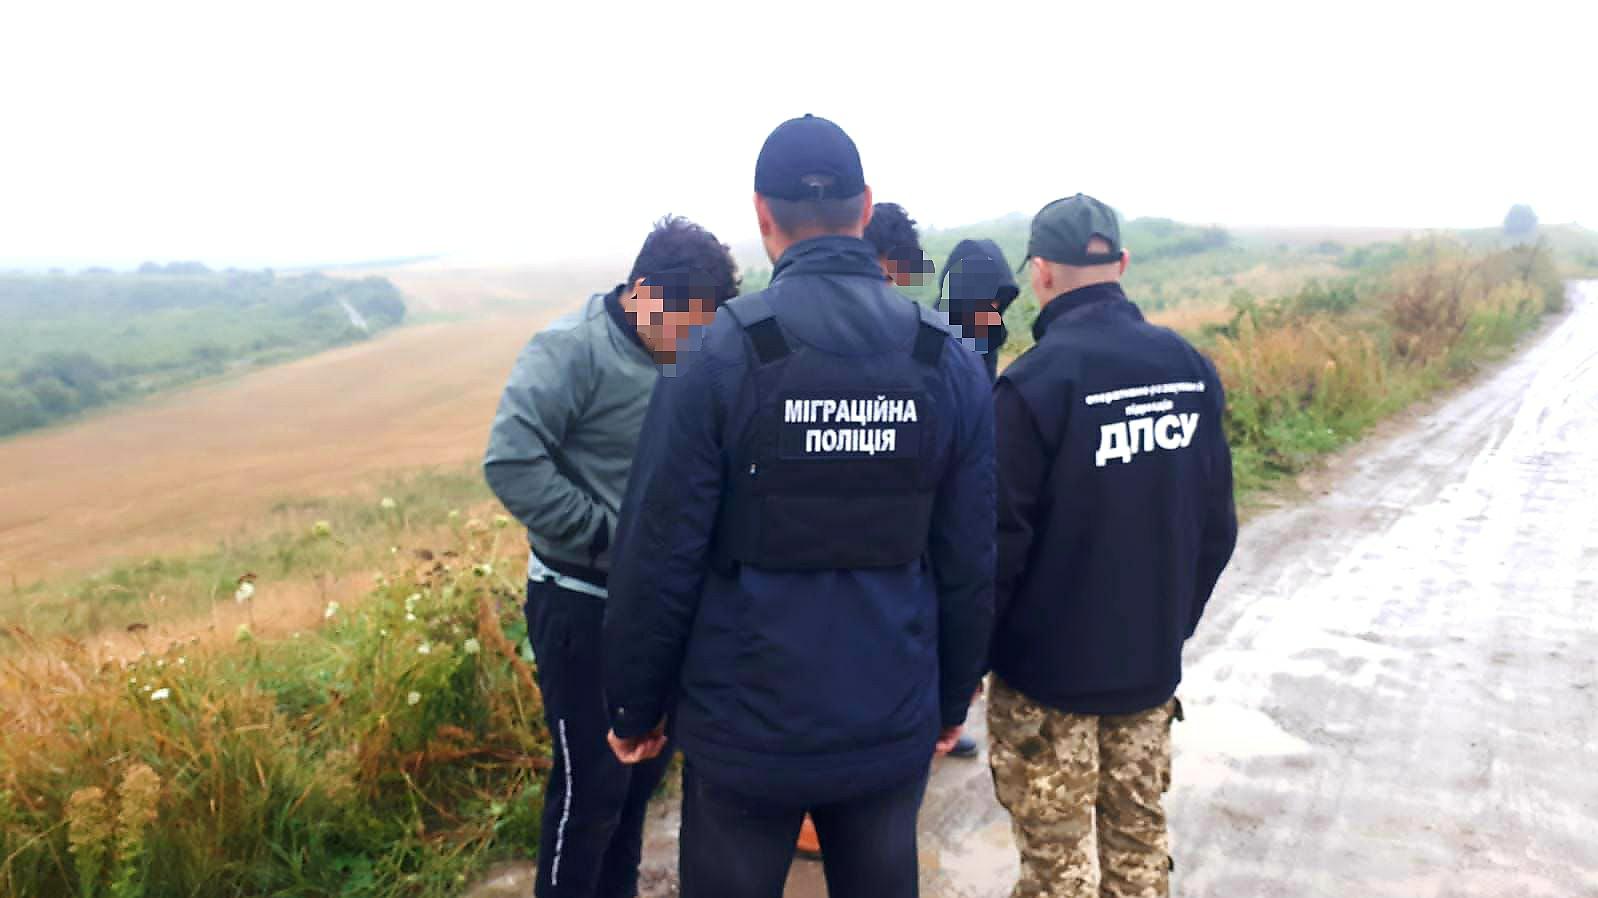 Створення міжнародного каналу нелегальної міграції – на Буковині судитимуть злочинне угруповання